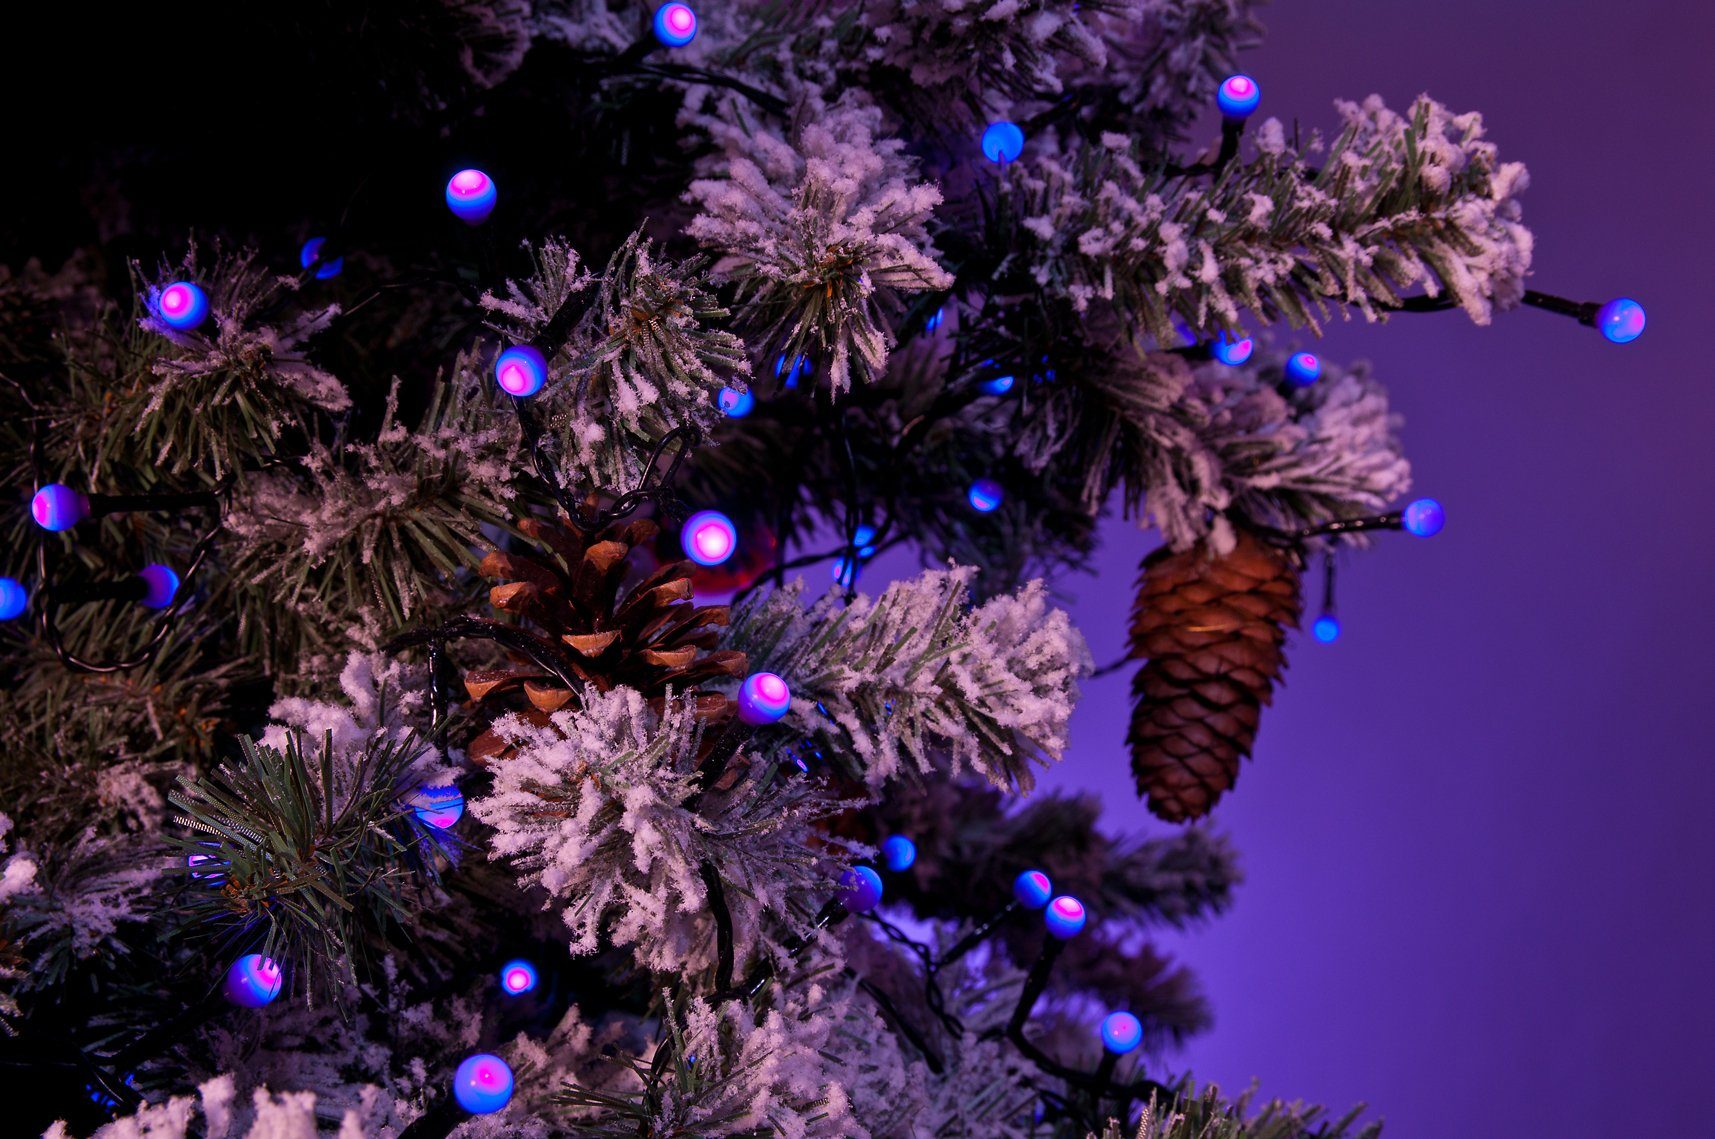 KONSTSMIDE LED-Lichterkette Weihnachtsdeko aussen, 80-flammig, Globelichterkette, purpurfarbene LED 80 runde Dioden, Dioden